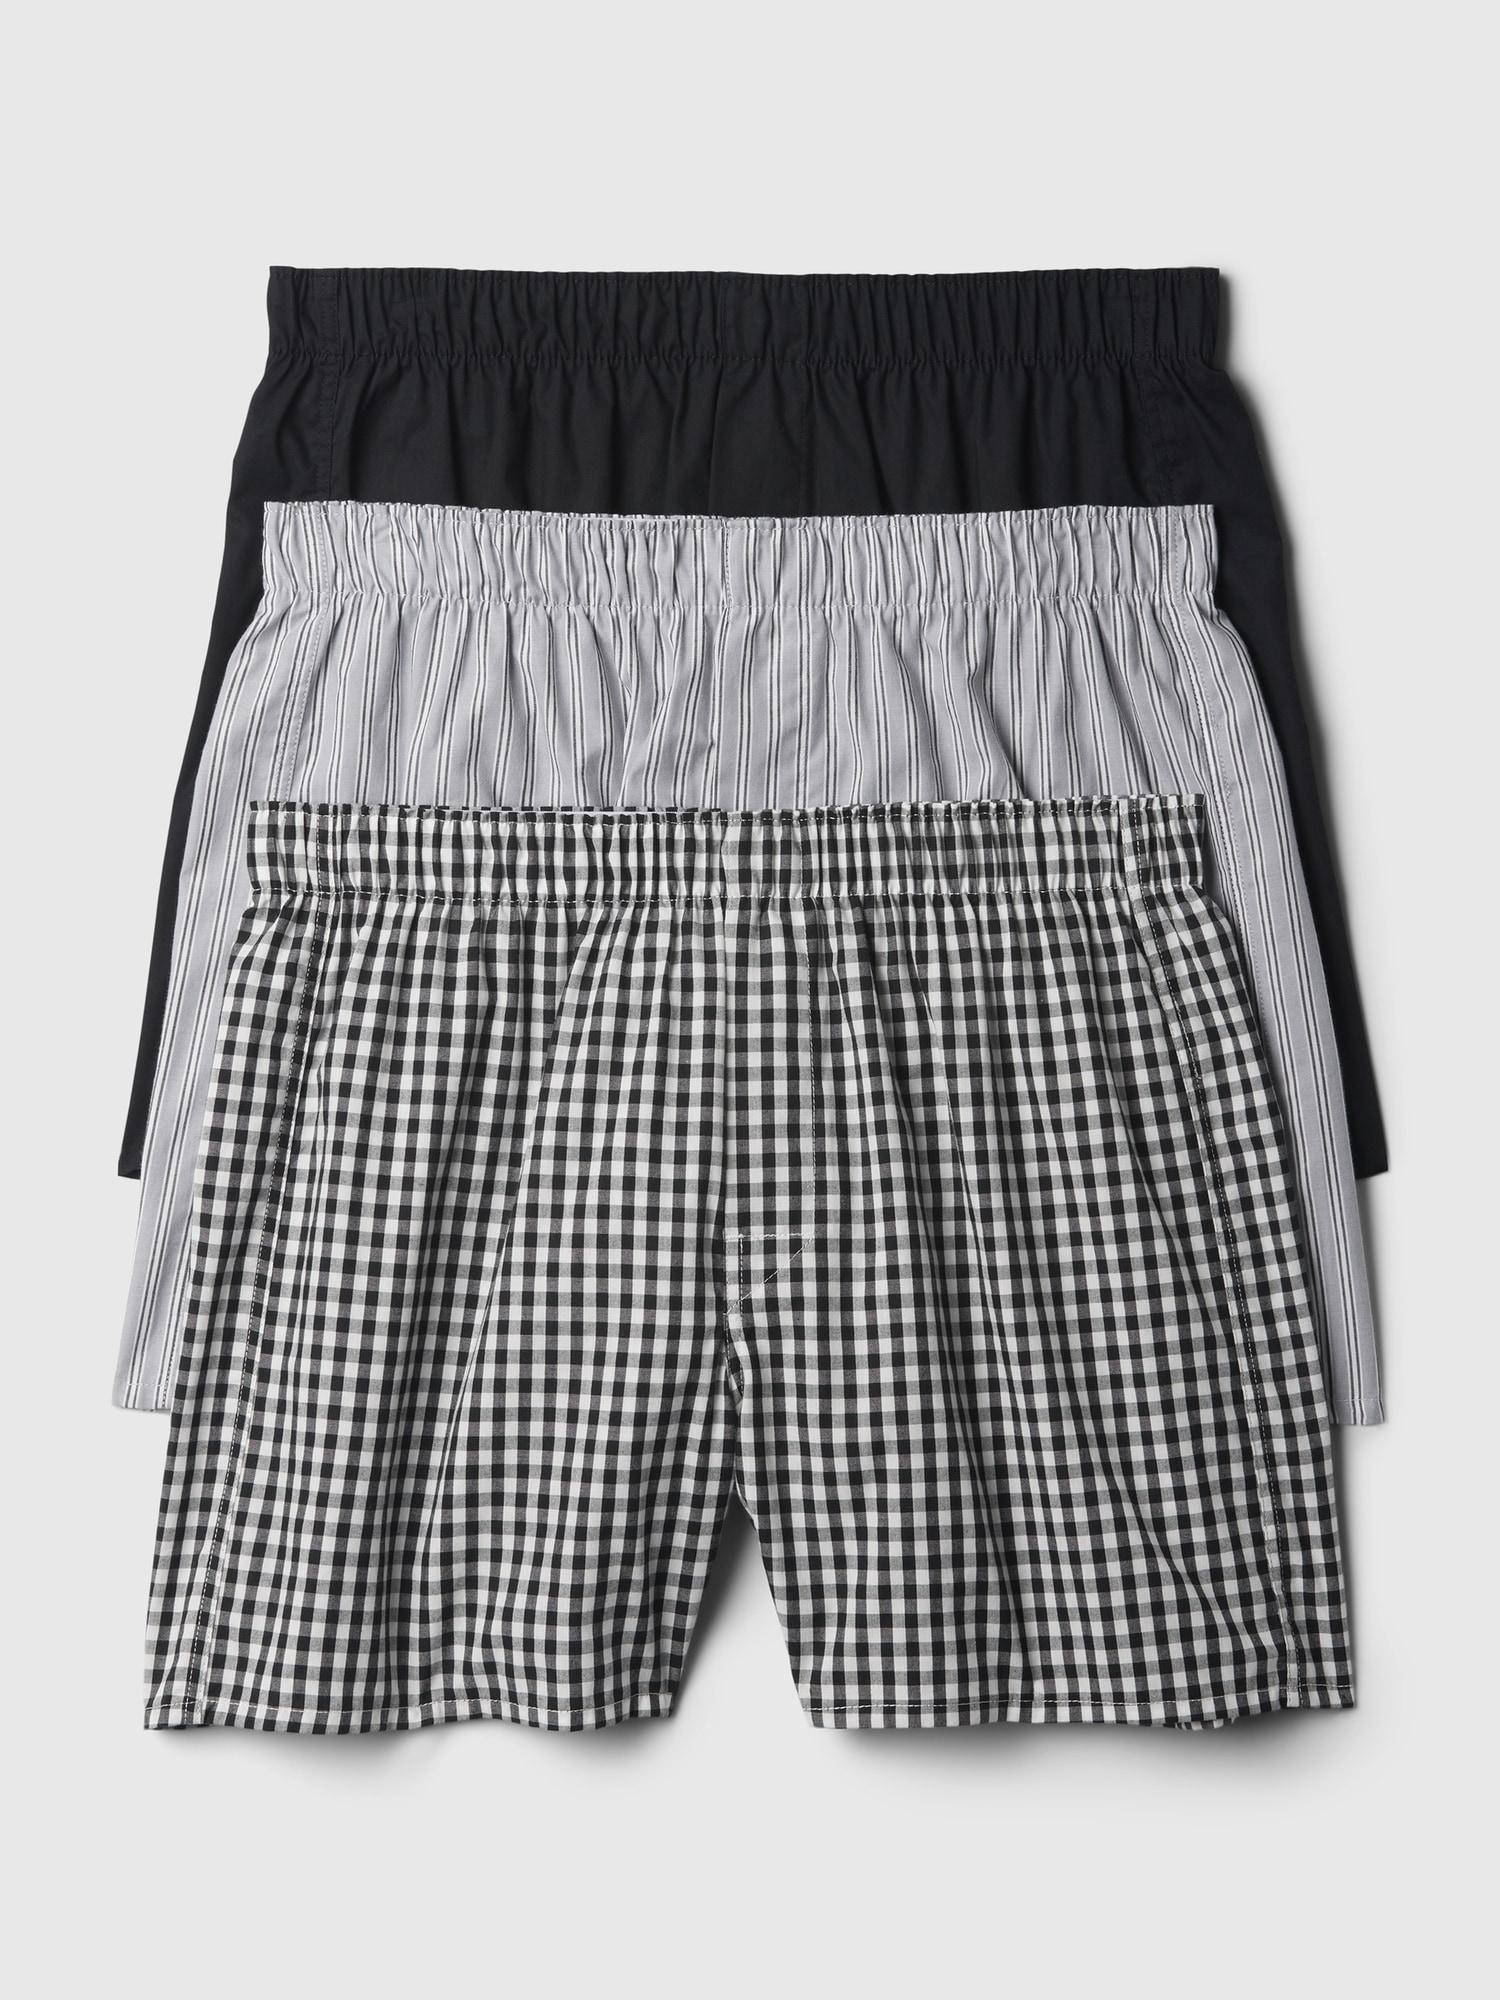 Gap Kids Boys Underwear Boxer Briefs BLACK PANTHER MARVEL Medium M 8 Pack 4  New